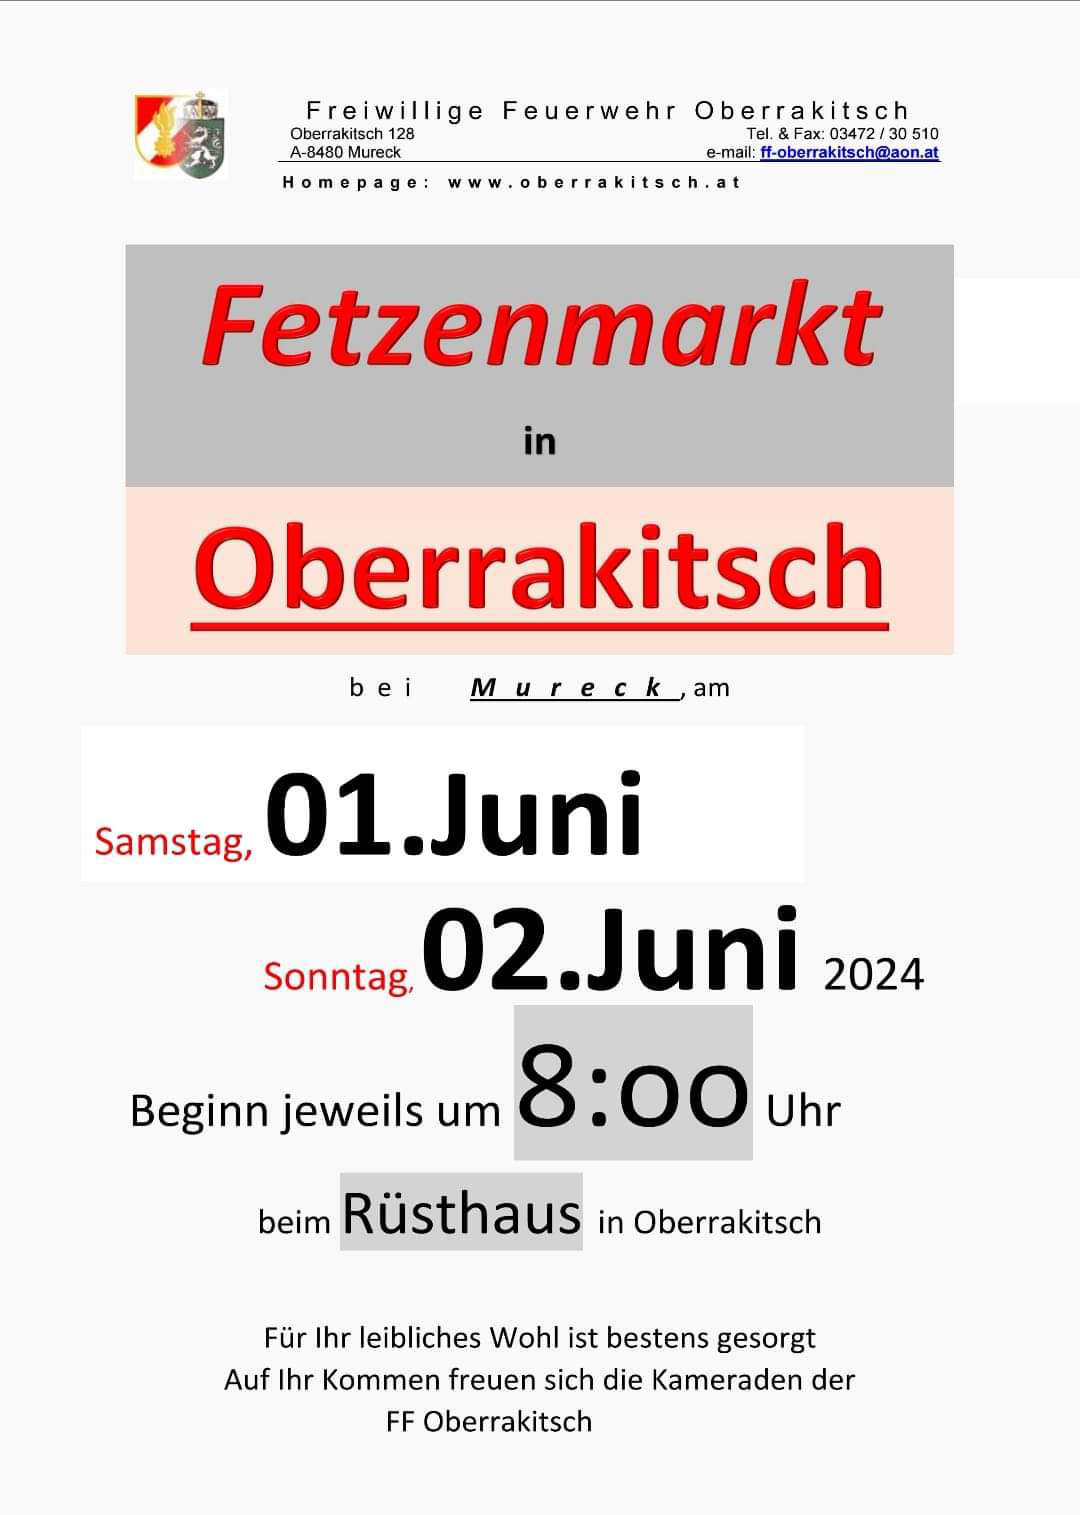 Fetzenmarkt der FF Oberrakitsch